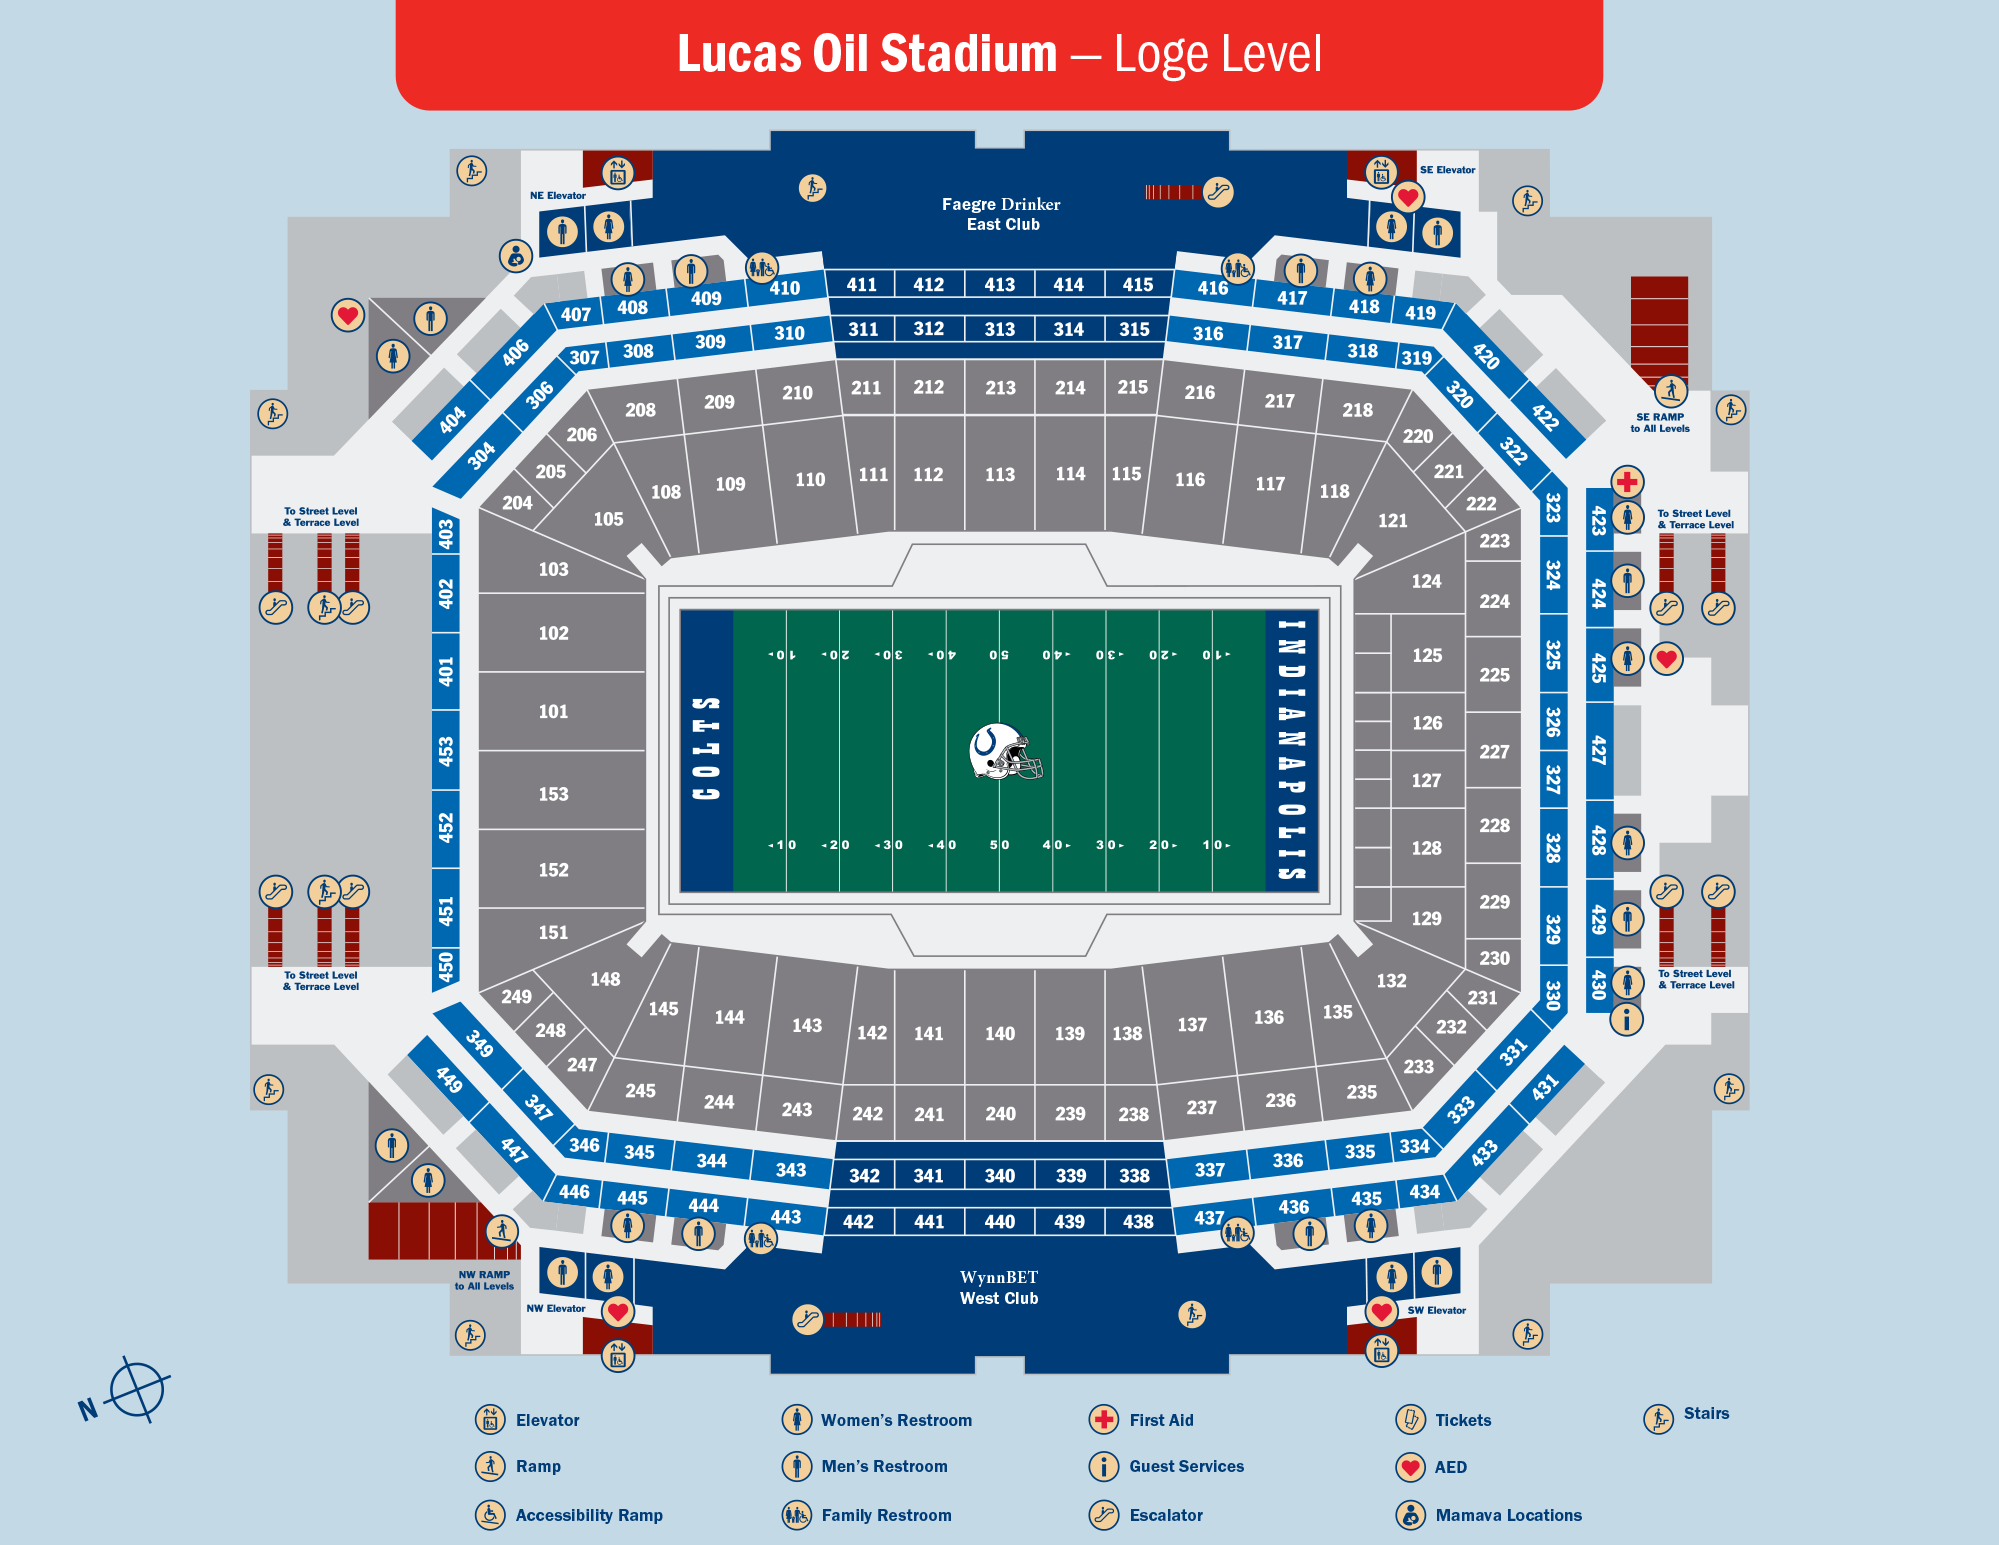 Lucas Oil Stadium Loge Level Map